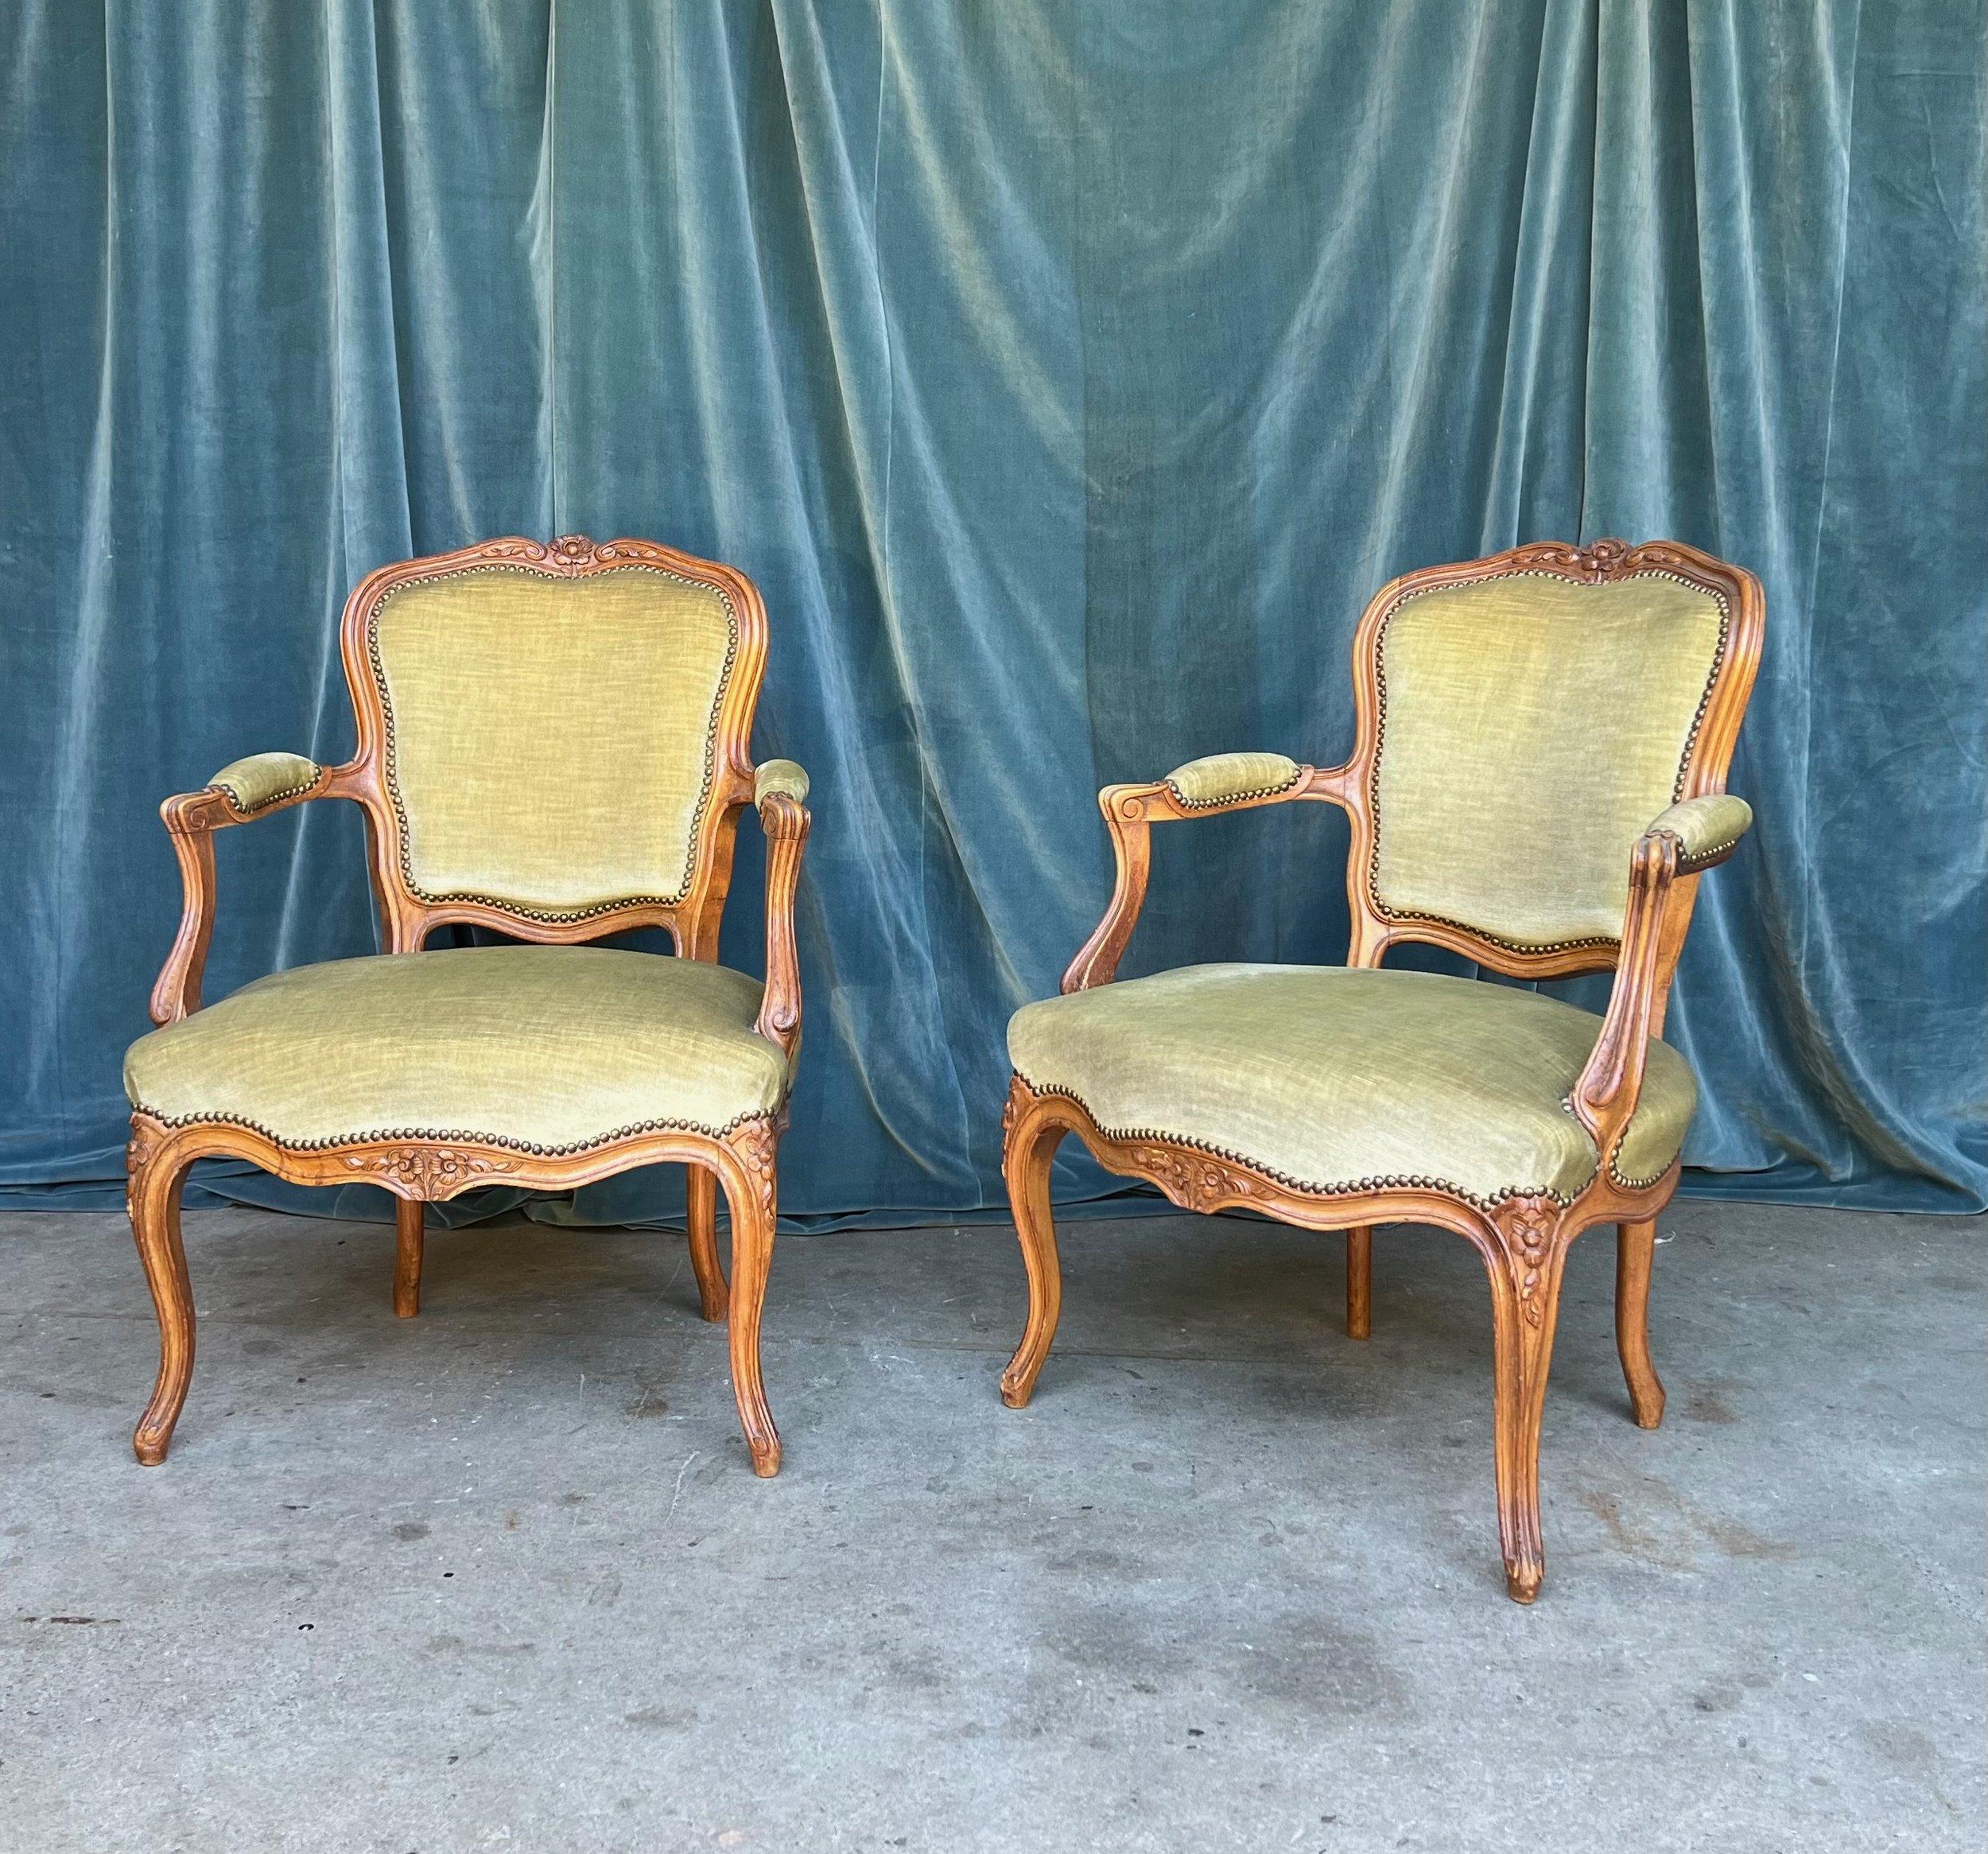 Cette élégante paire de fauteuils en bois fruitier de style Louis XV, tapissée d'un doux et délicat velours vert pâle, ajoutera une touche d'élégance à tout salon ou bureau. Les sculptures complexes des cadres imitent les décorations florales que